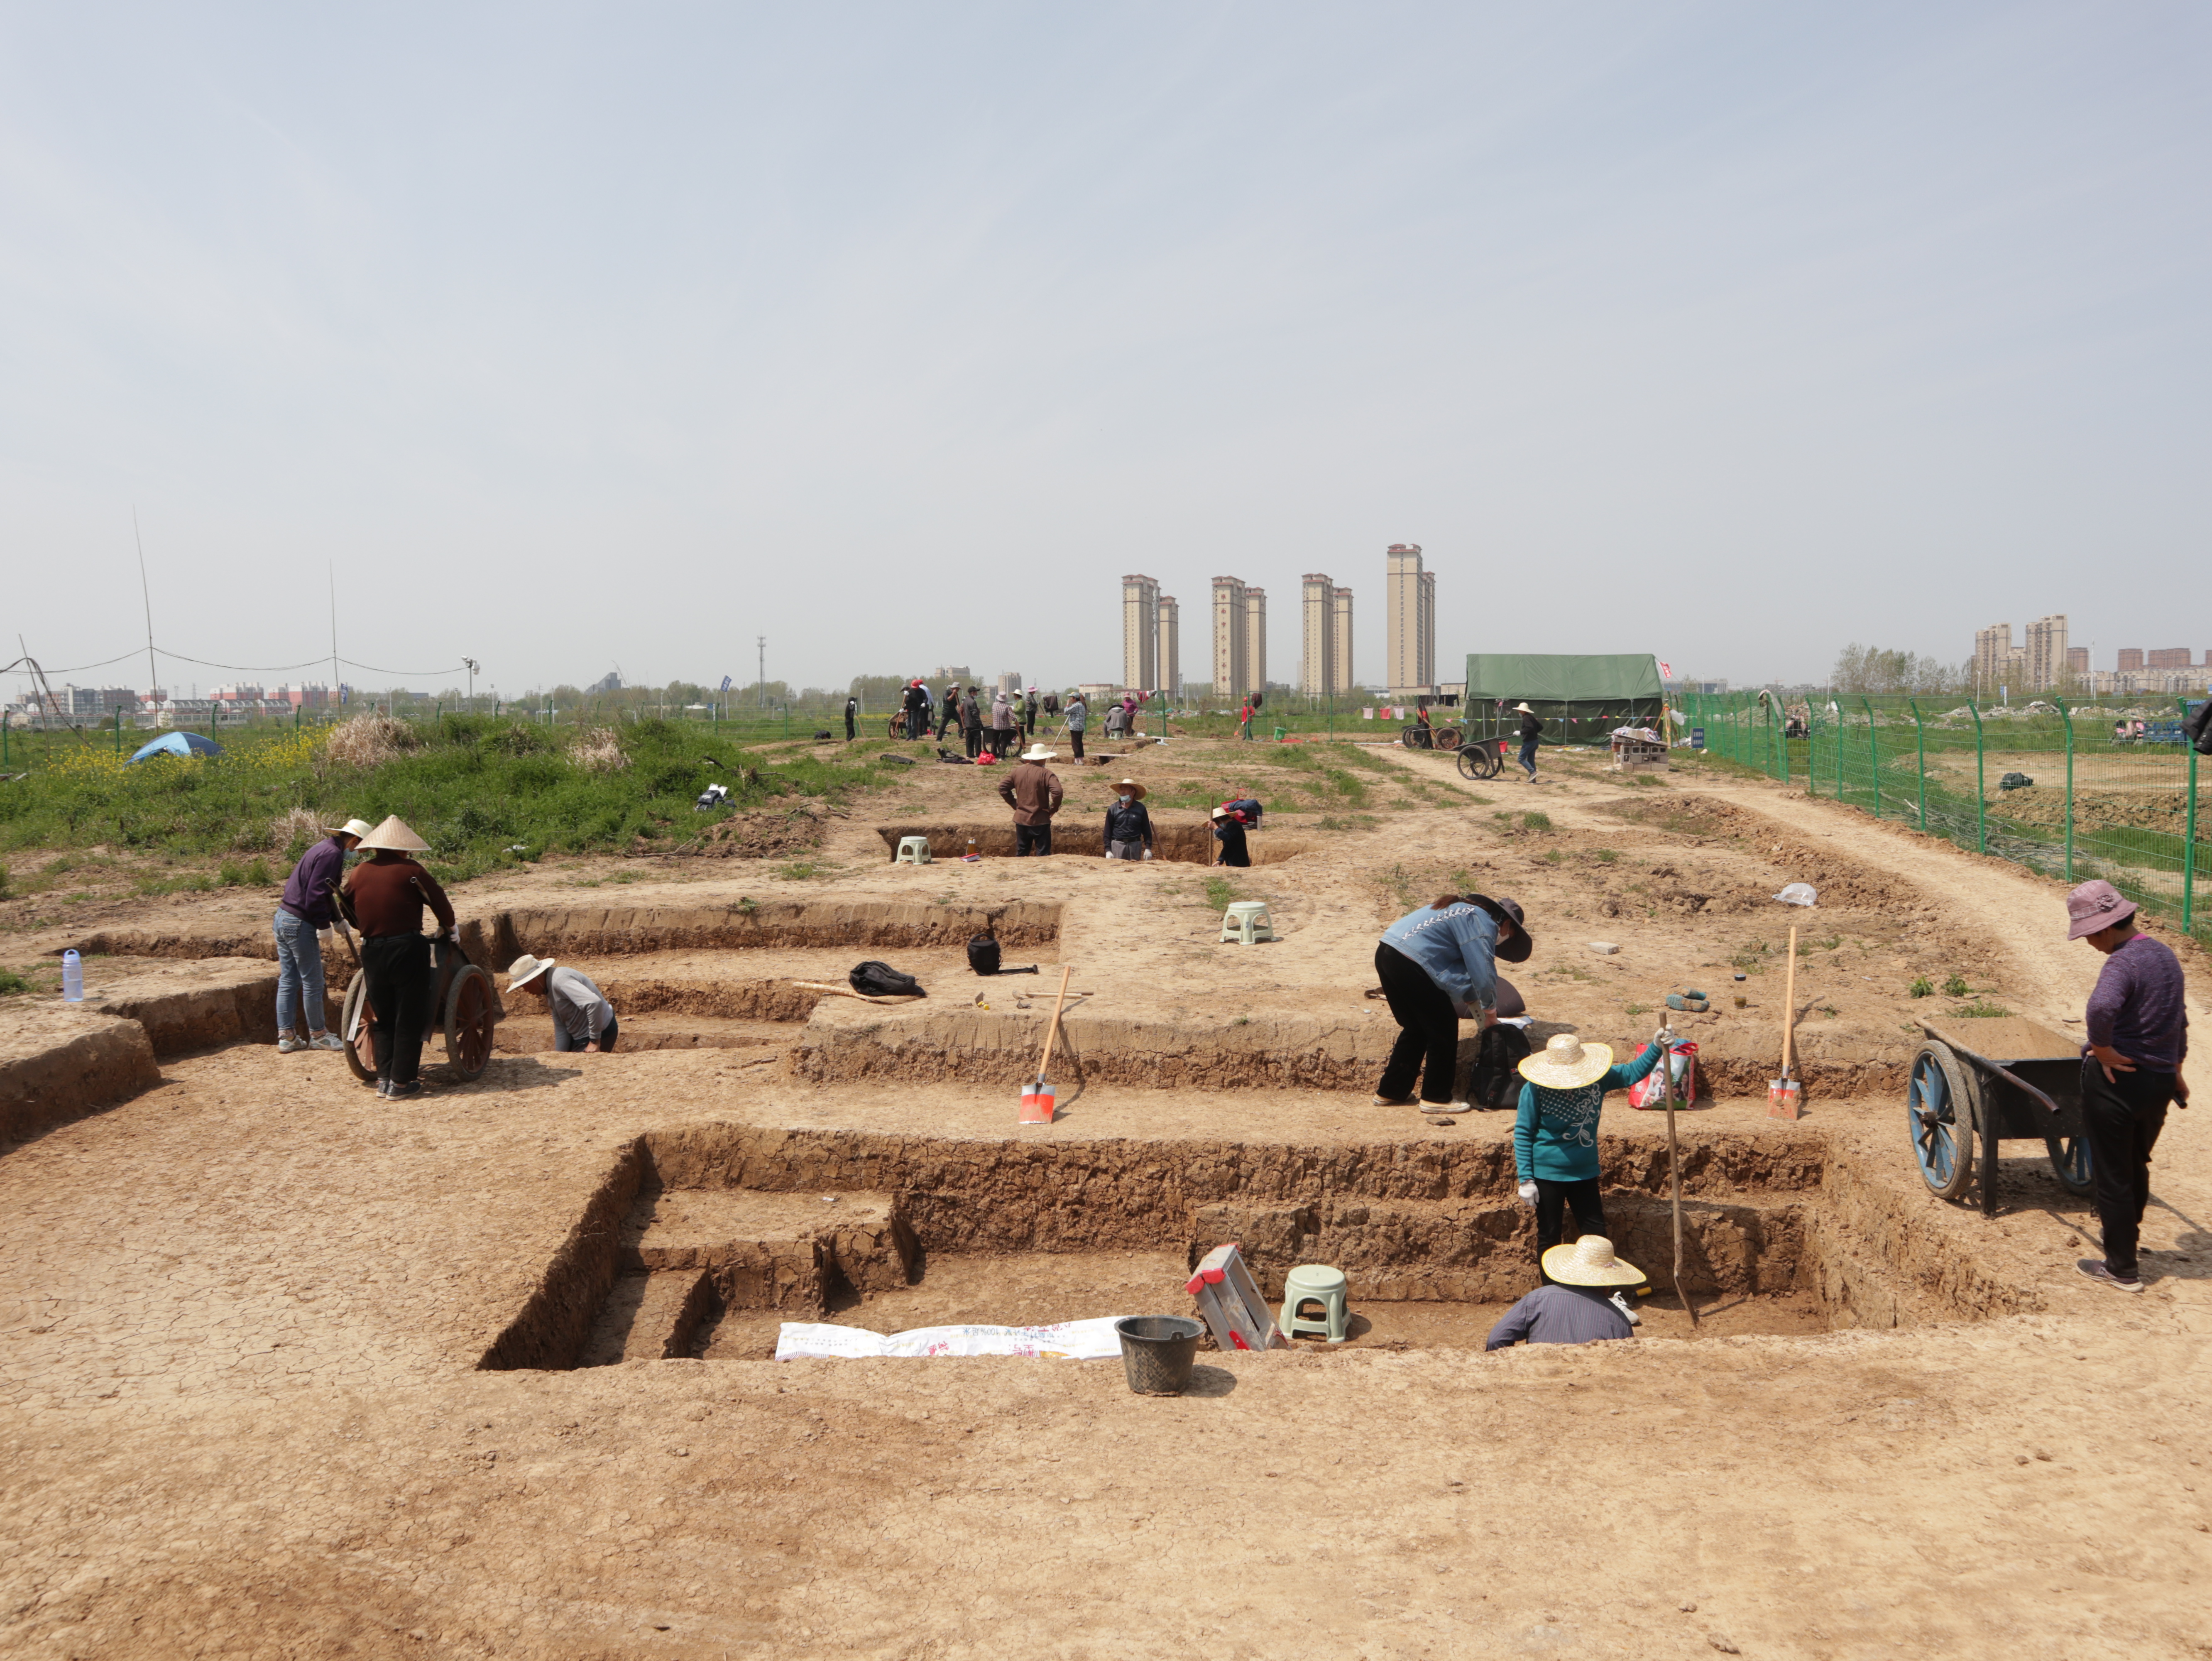 4考古队对第Ⅱ区进行发掘.JPG